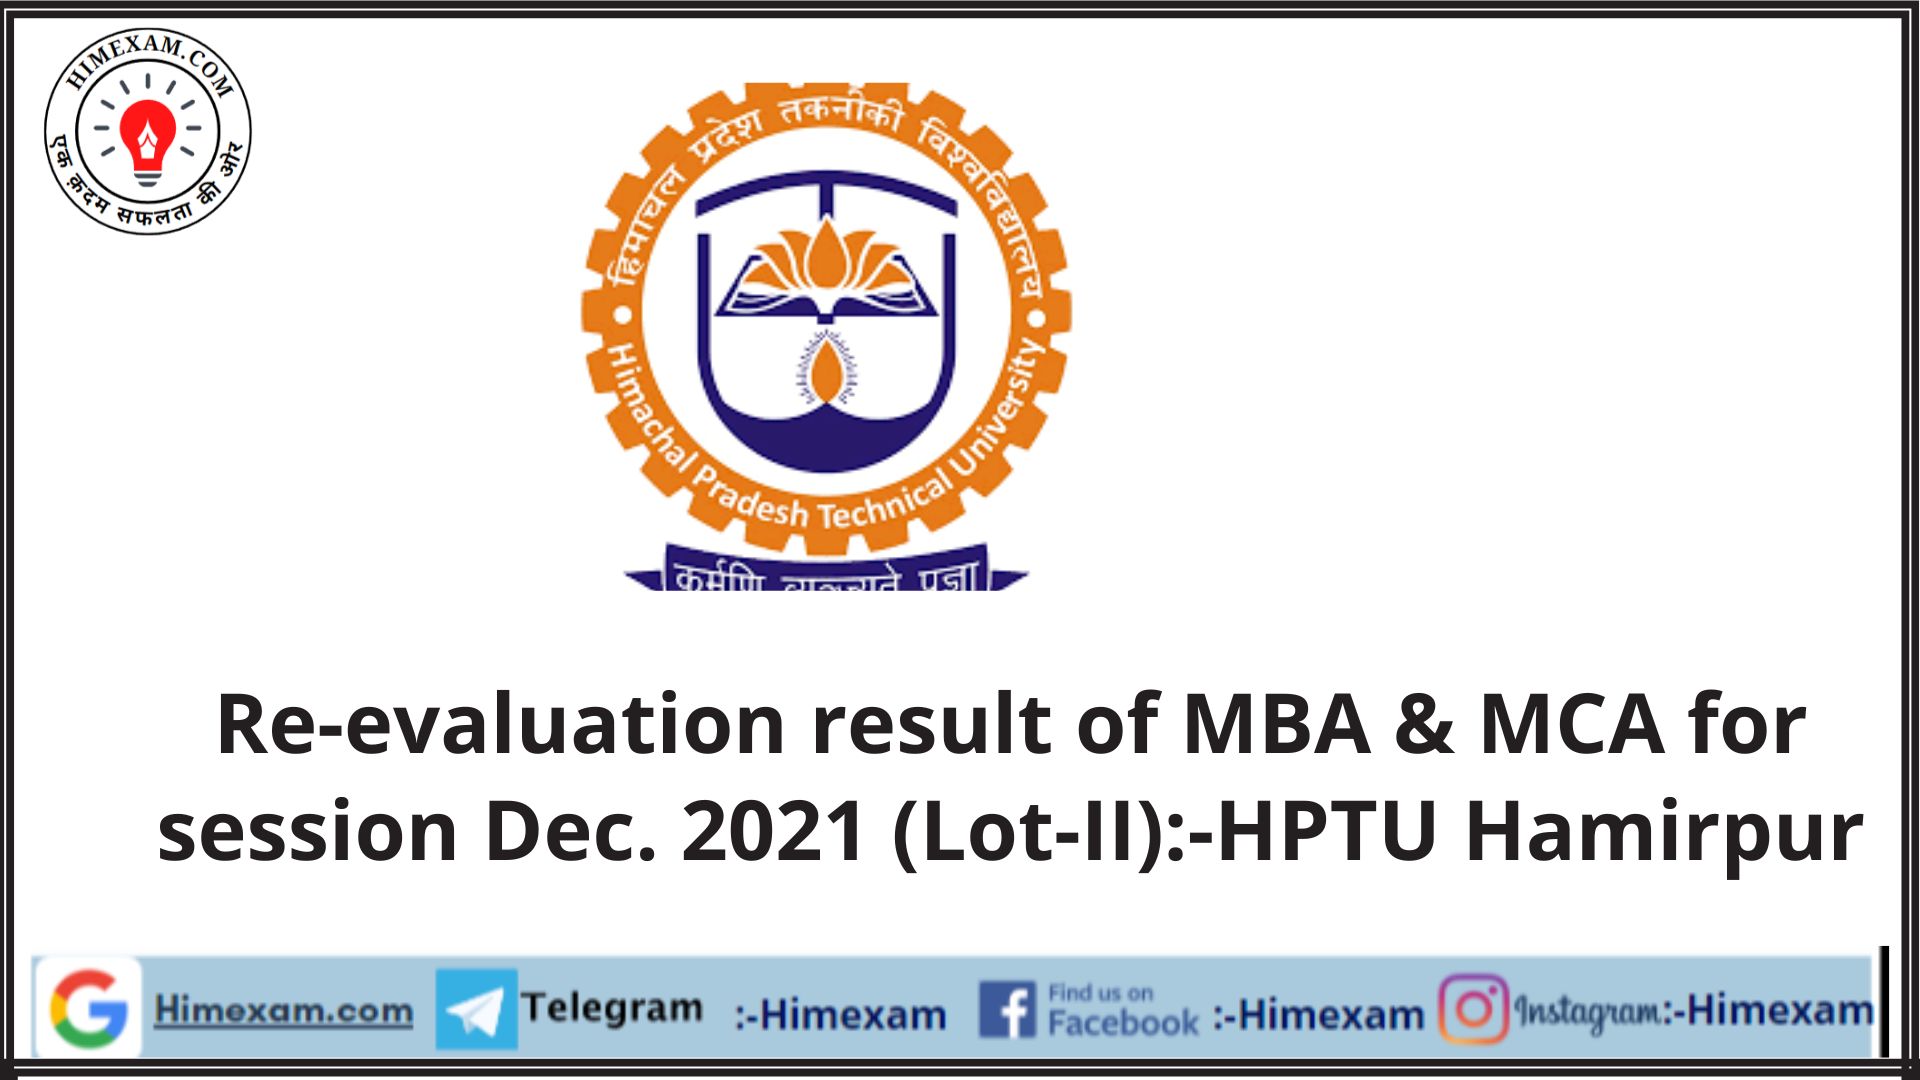 Re-evaluation result of MBA & MCA for session Dec. 2021 (Lot-II):-HPTU Hamirpur